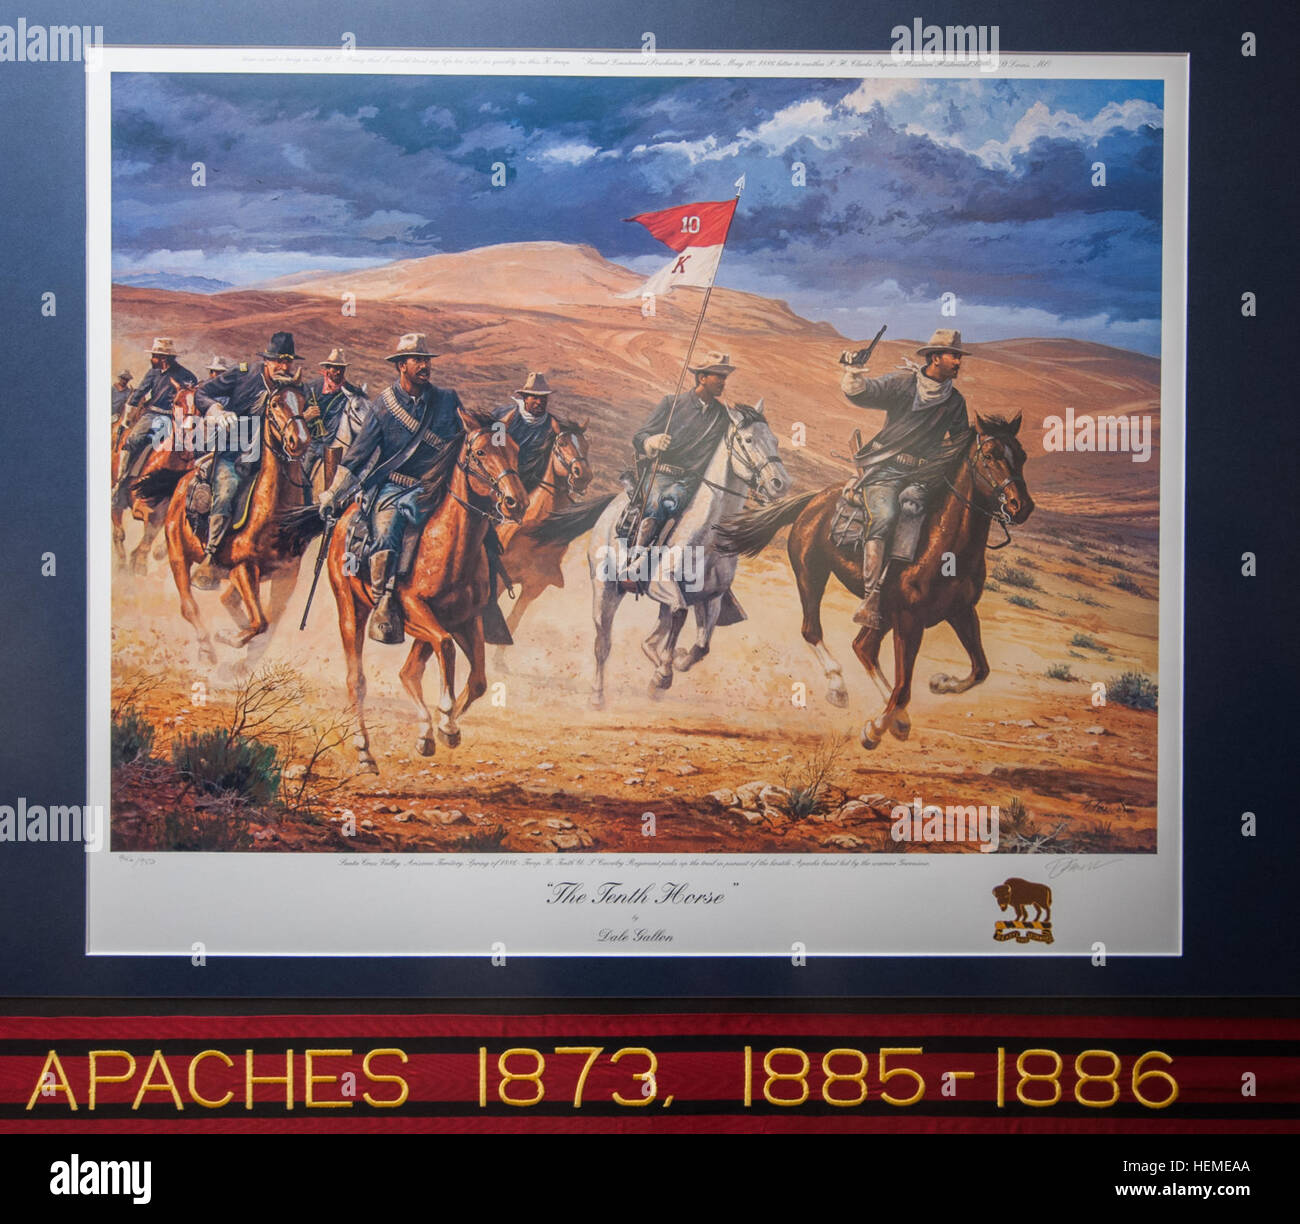 Hängen Sie Buffalo Soldier druckt, von berühmten historischen Künstler Dale Gallone, in der US-Armee Reserve Hauptquartier in Fort Bragg, N.C., 12. Februar 2013. Die Drucke, befindet sich im ersten Stock in der Nähe der USARC G-4, sind in Gedenken an Black History Month. In diesem Gemälde, Troop K holt 10. US-Kavallerie-Regiment der Weg bei der Verfolgung der feindlichen Apache-Band unter der Leitung von dem Krieger Geronimo. in Santa Cruz Valley, Arizona-Territorium. Büffel-Soldaten in USARC hervorgehoben angezeigt 130212-A-XN107-777 Stockfoto